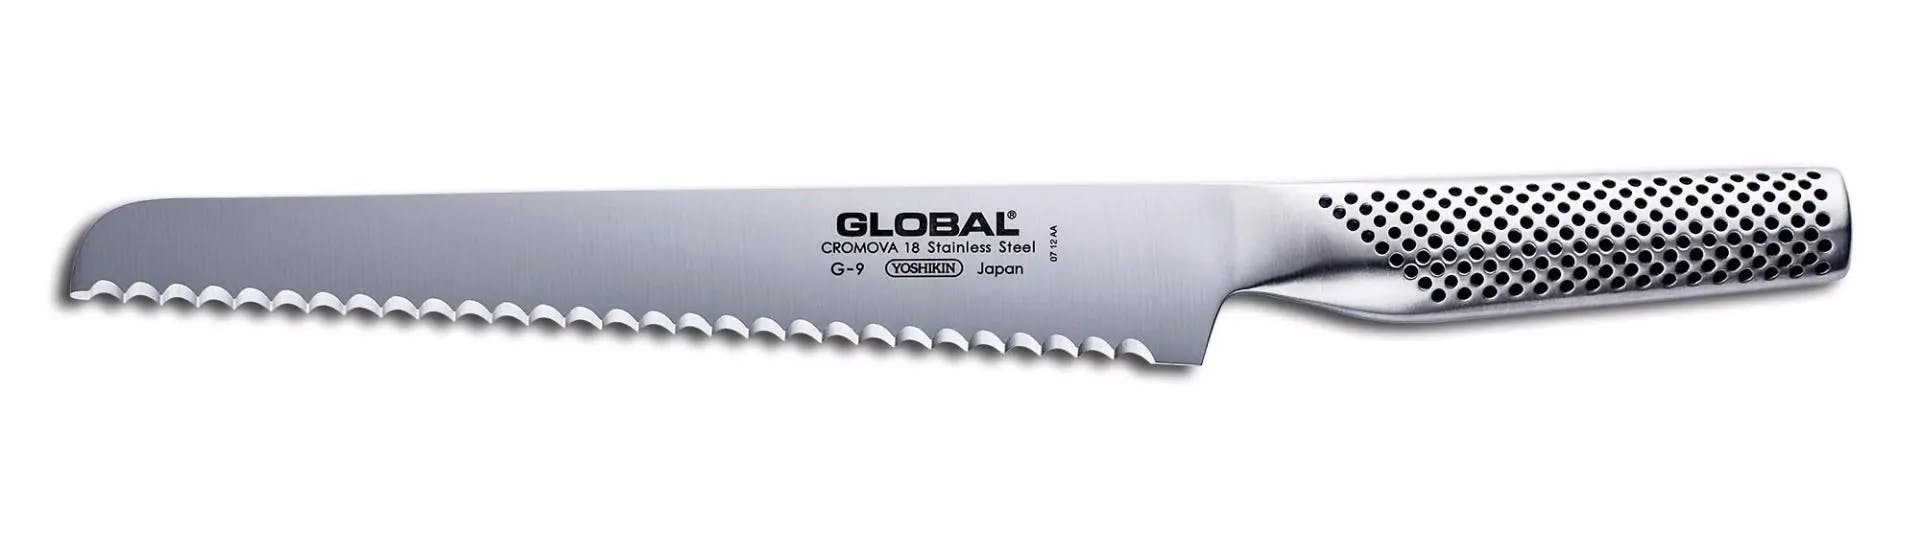 Global 6-Piece Knife Block Set
 (G3,G4,G9,Gs3,Gs7)